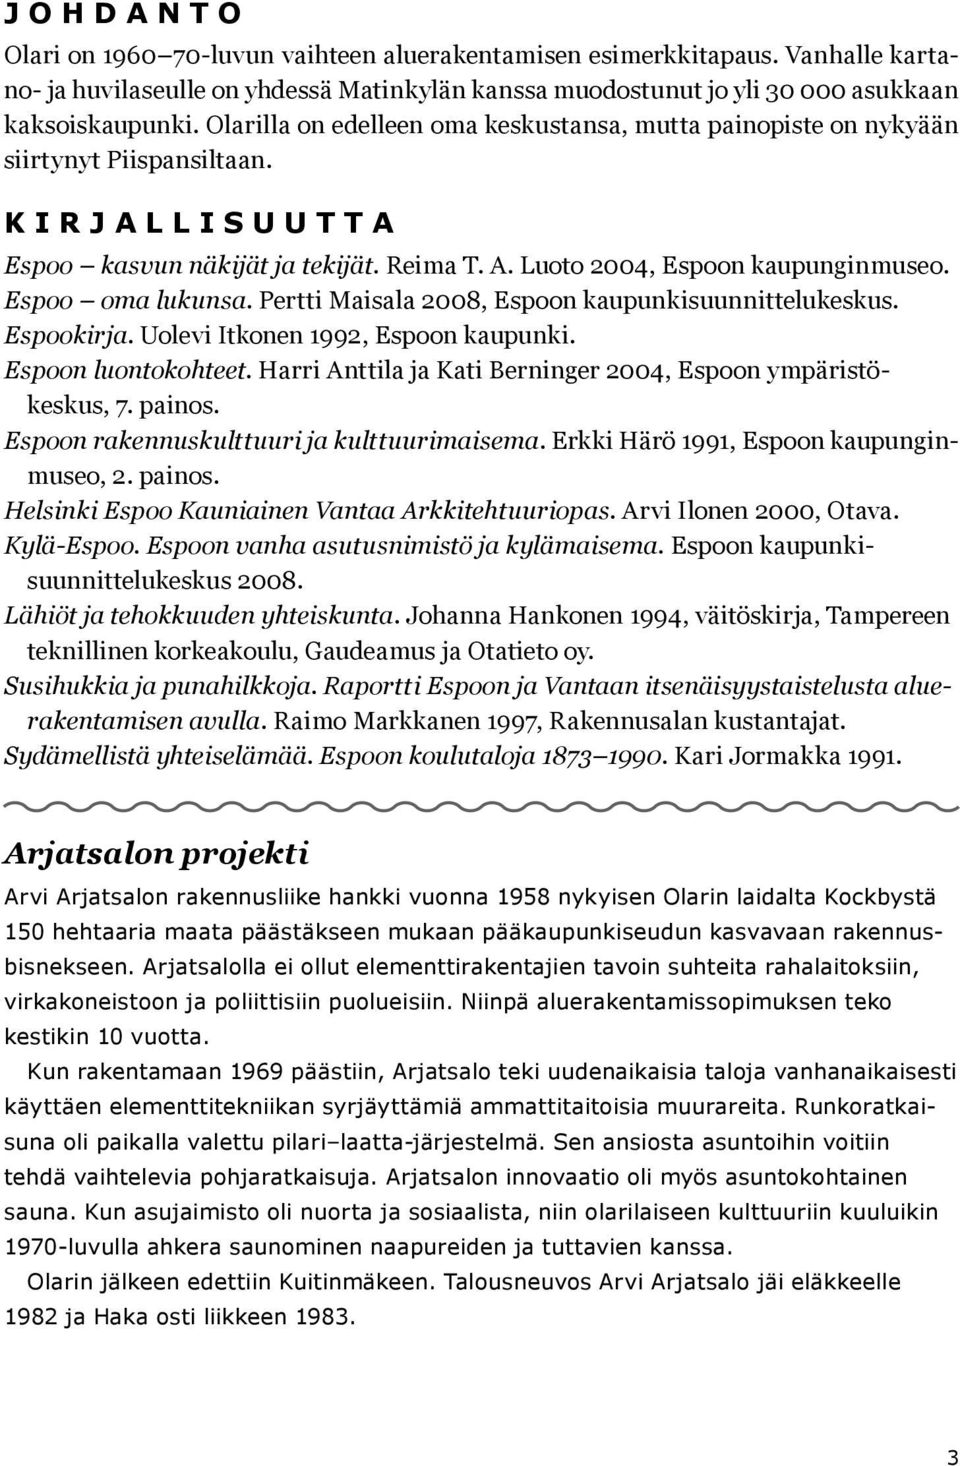 Espoo oma lukunsa. Pertti Maisala 2008, Espoon kaupunkisuunnittelukeskus. Espookirja. Uolevi Itkonen 1992, Espoon kaupunki. Espoon luontokohteet.